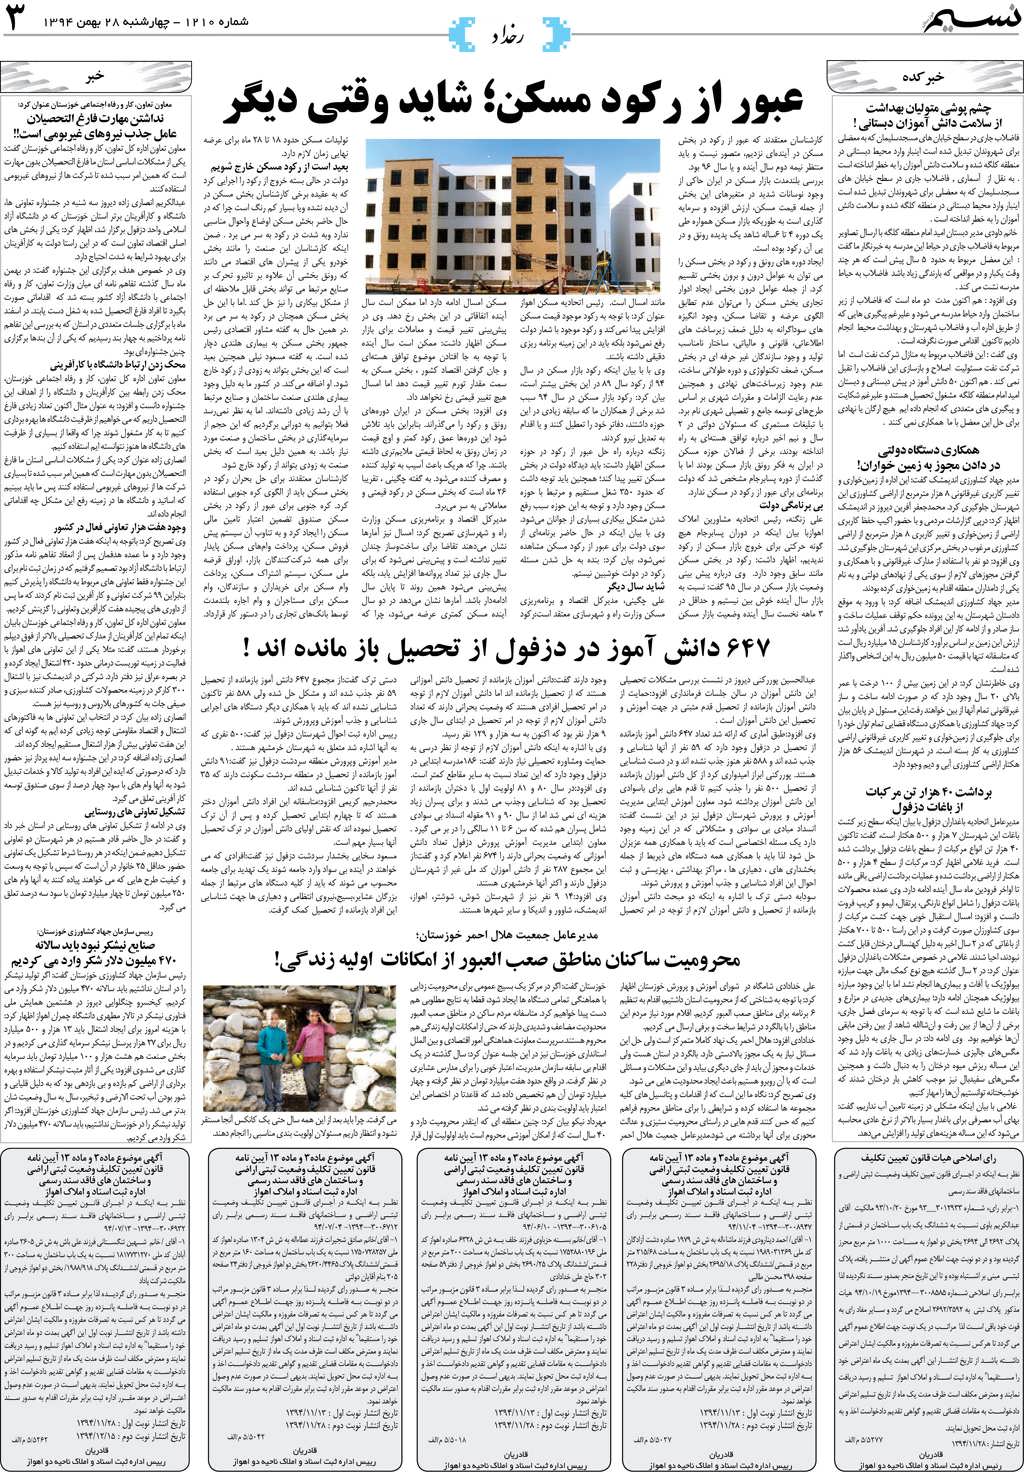 صفحه رخداد روزنامه نسیم شماره 1210